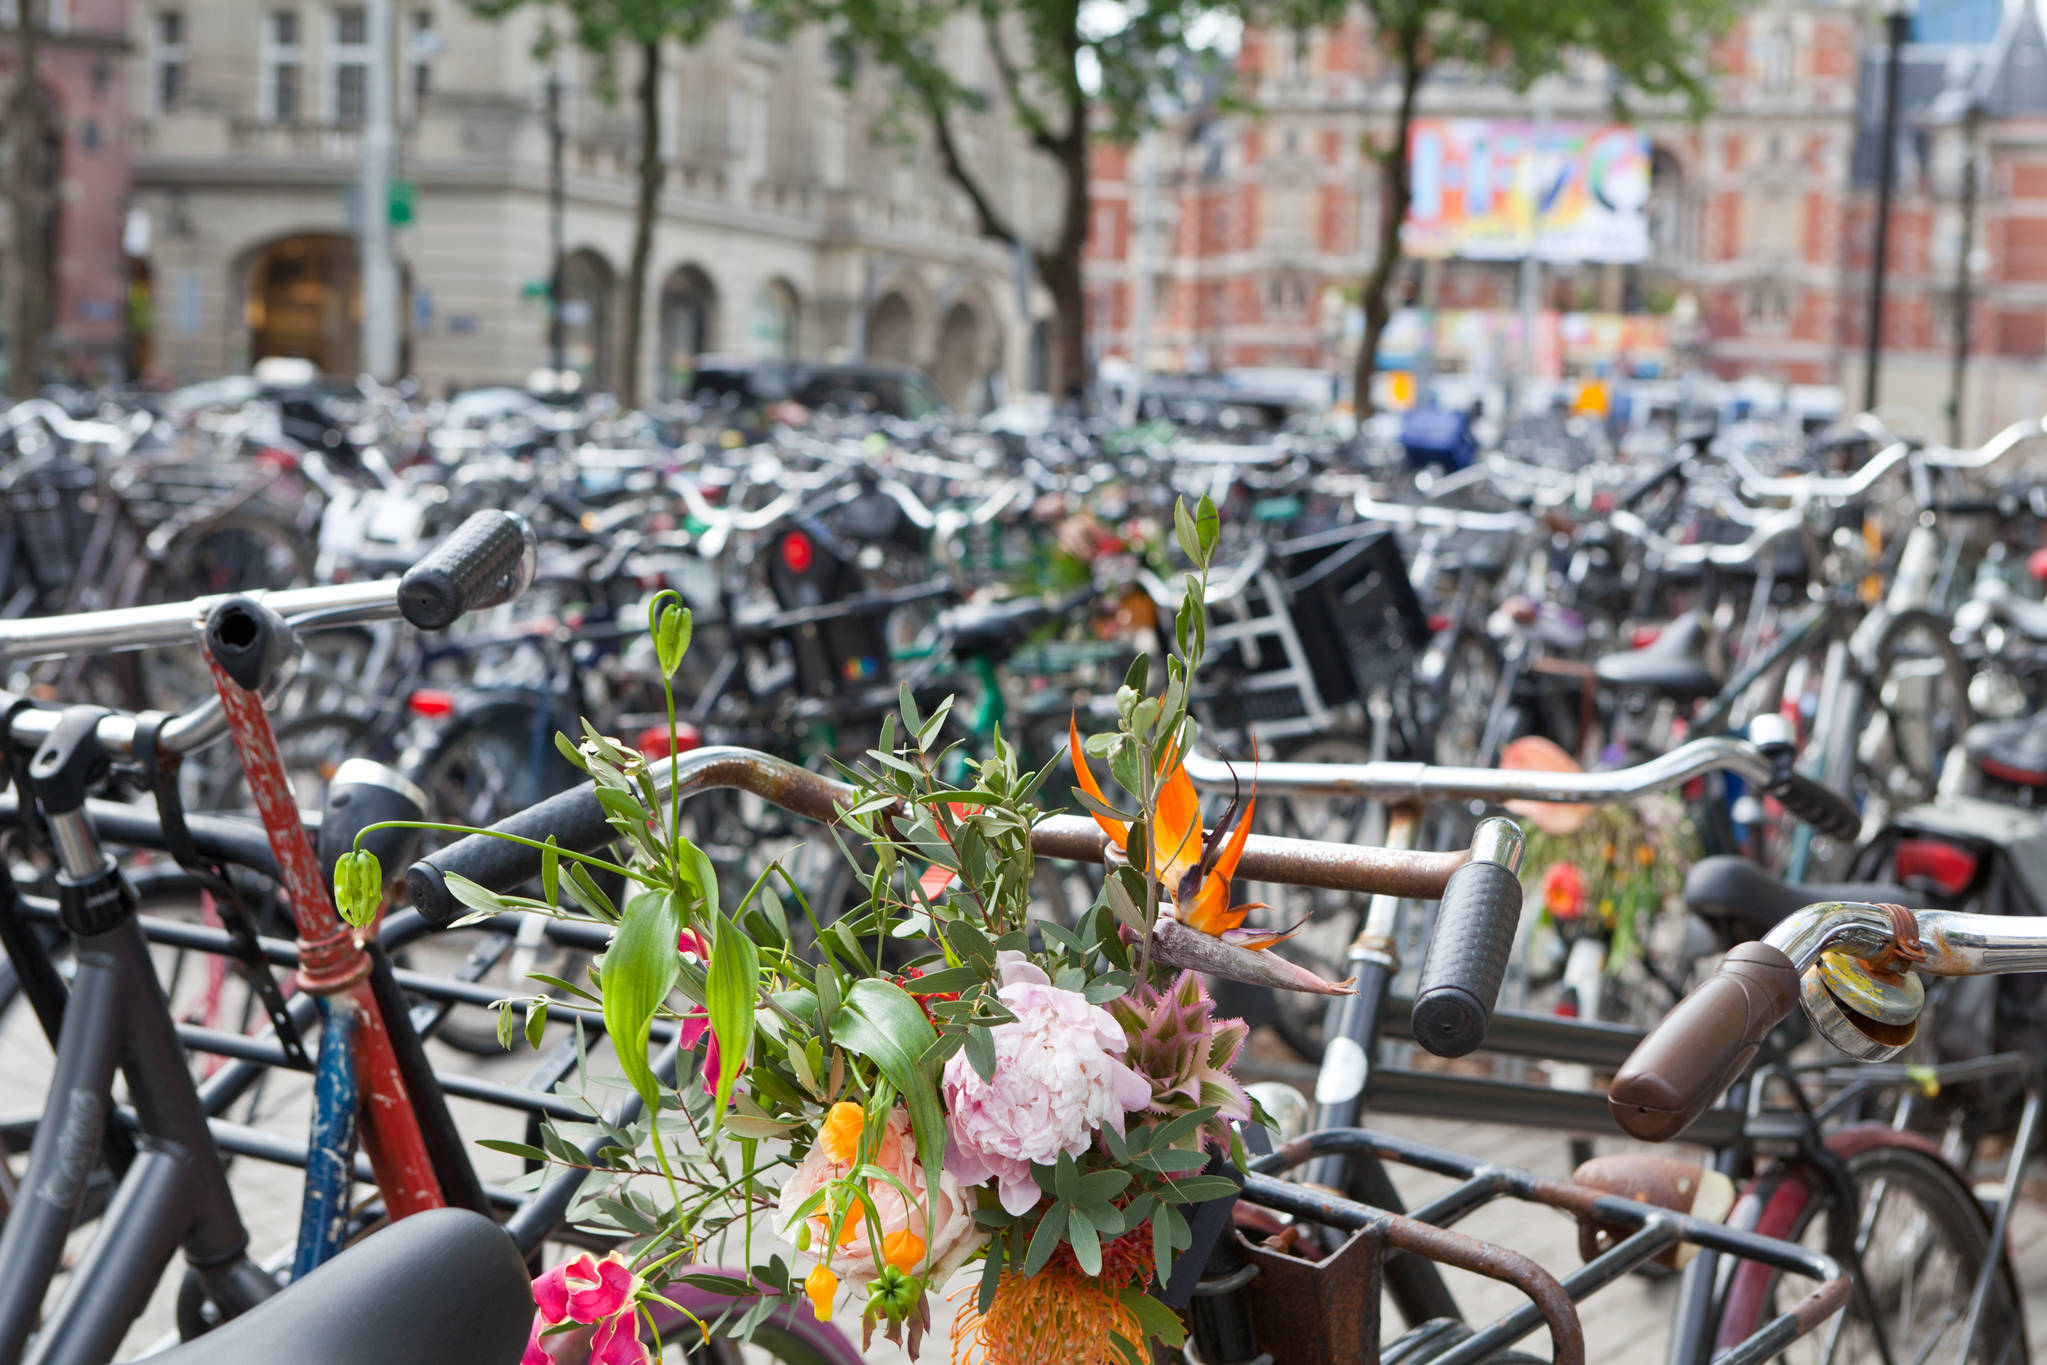 암스테르담은 인구보다 자전거가 많은 자전거 친화도시다. 